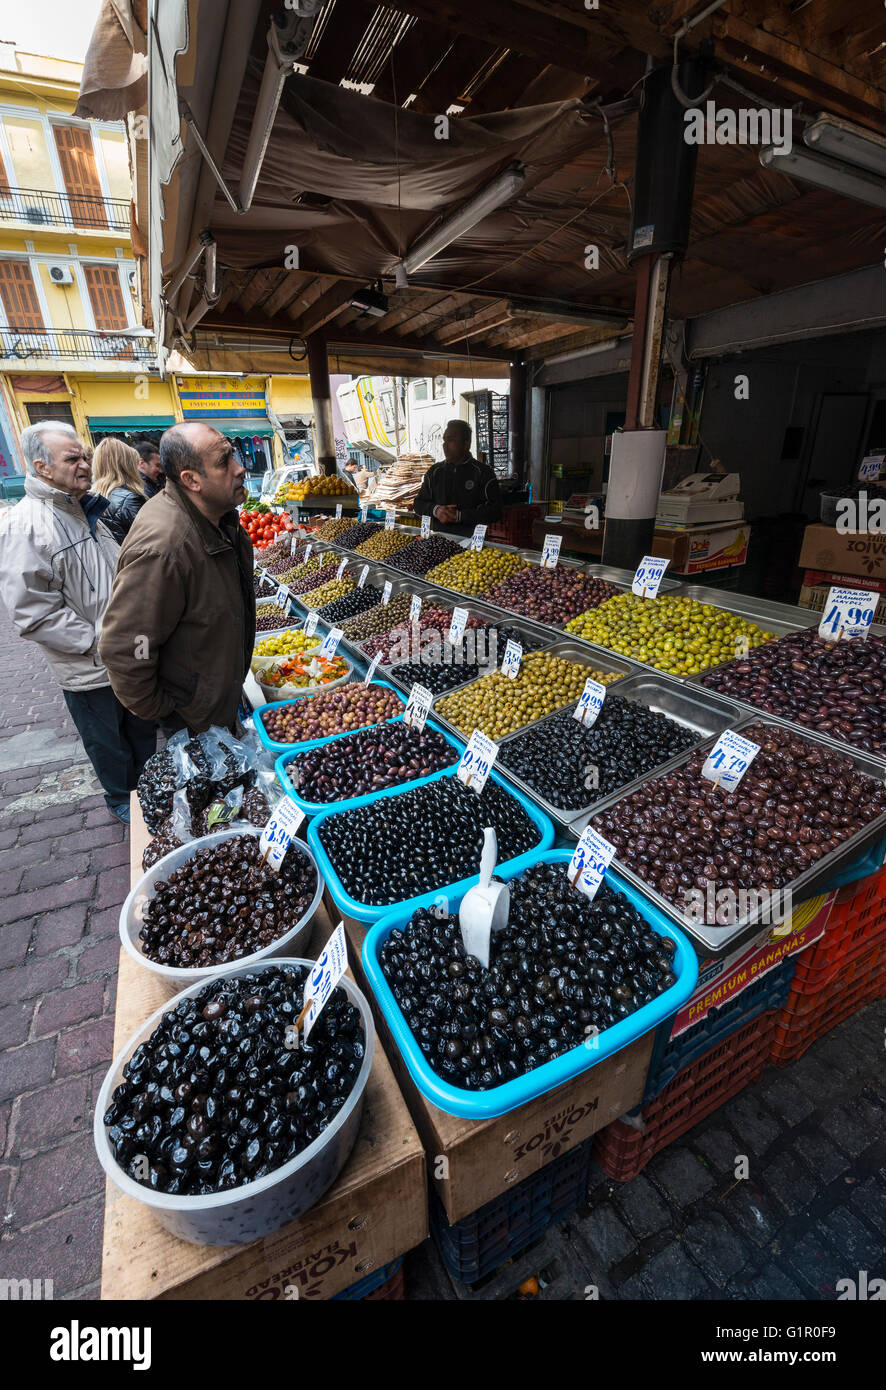 Eine Vielzahl von griechischen Oliven zum Verkauf auf dem Obst und Gemüse Markt auf Athinas Street, im Zentrum von Athen, Griechenland Stockfoto